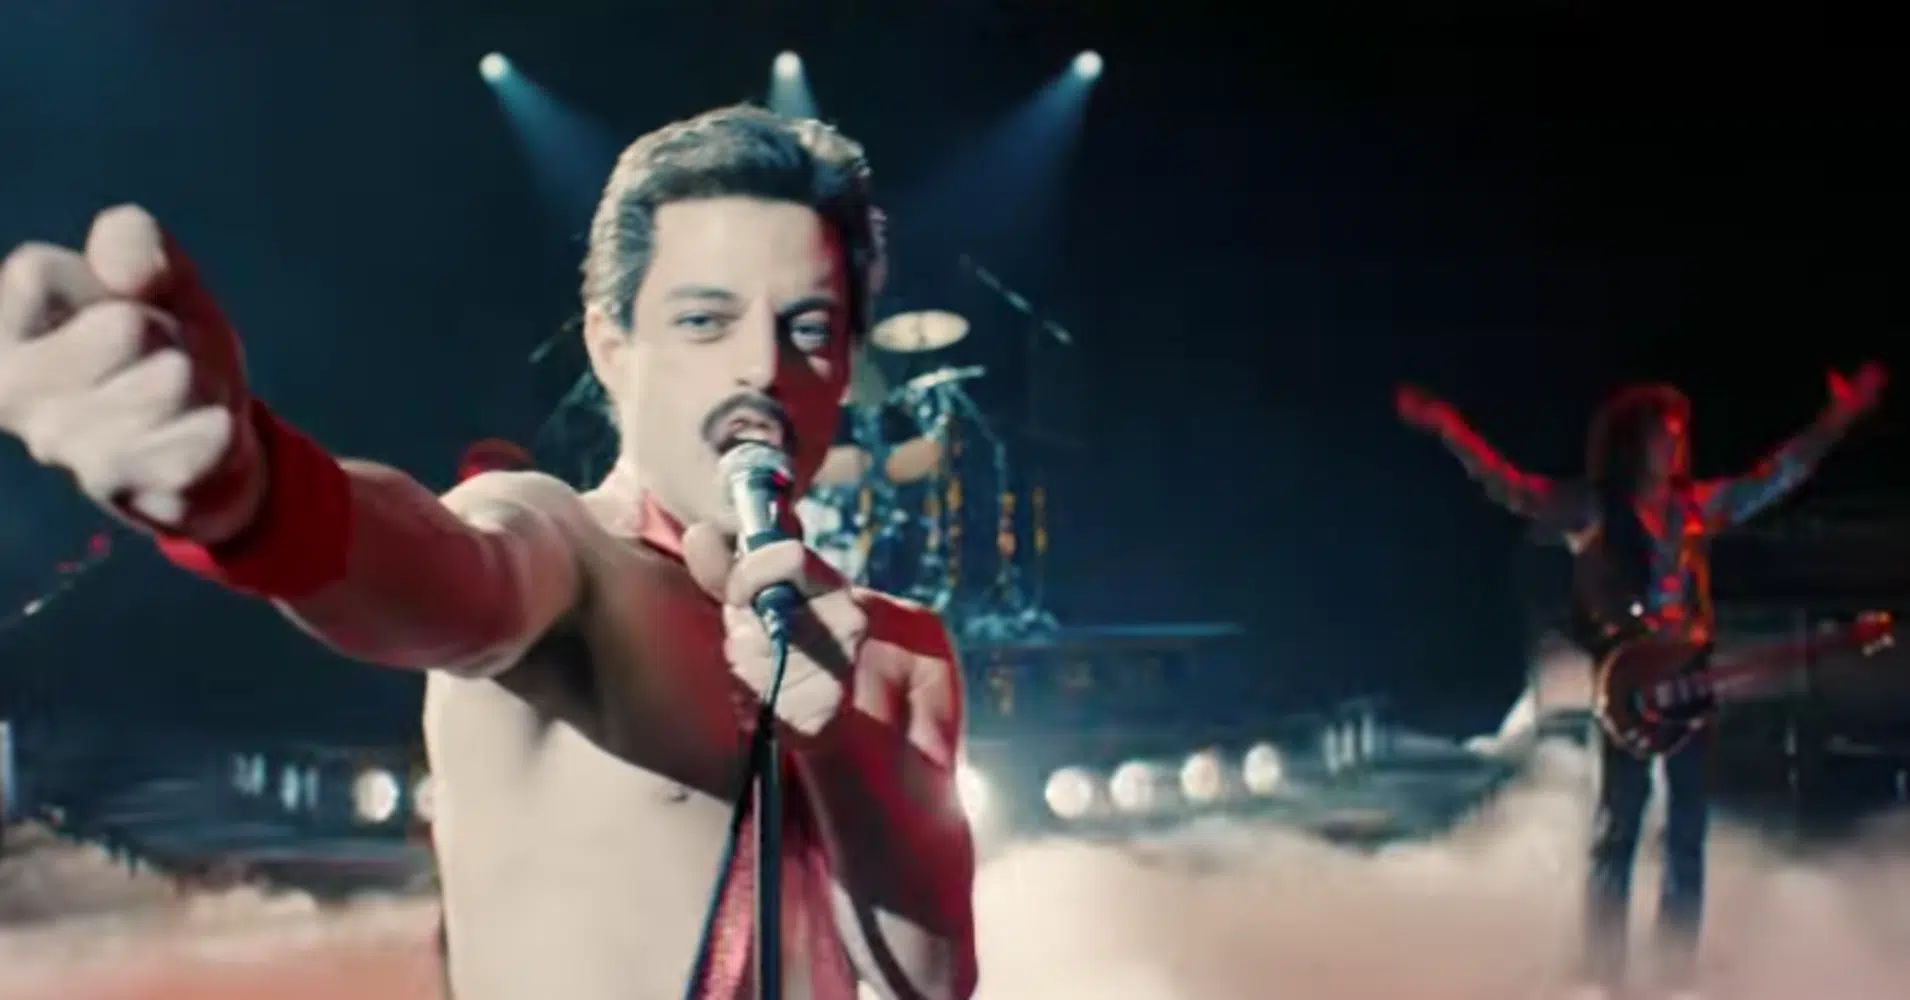 New Bohemian Rhapsody Trailer Released.